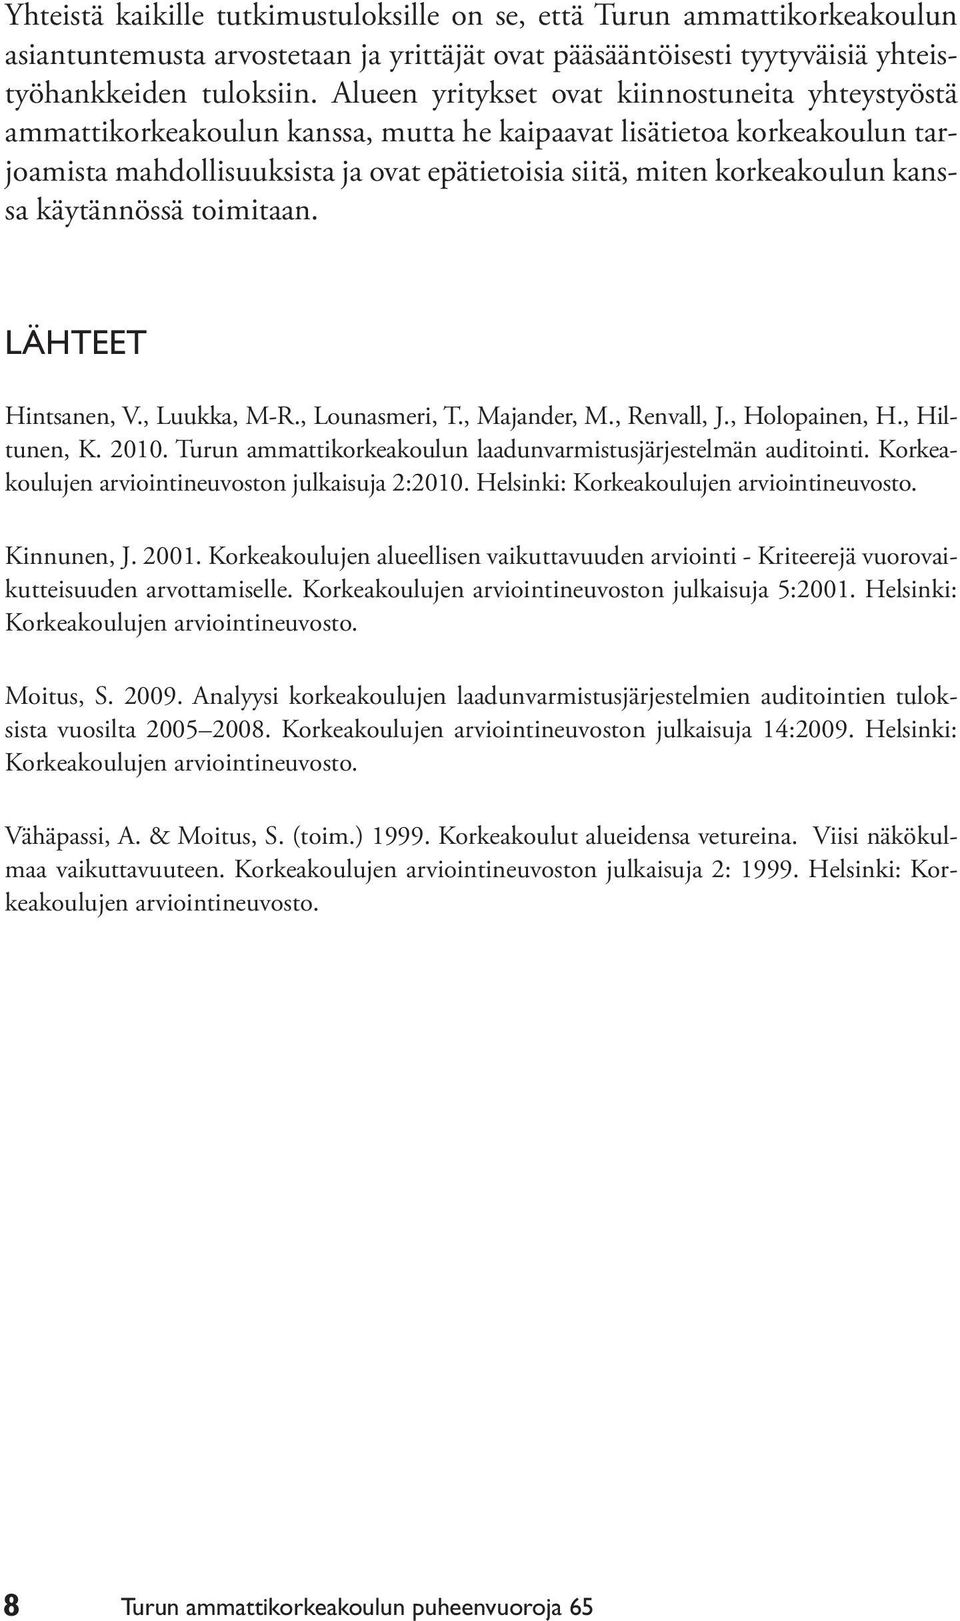 kanssa käytännössä toimitaan. LÄHTEET Hintsanen, V., Luukka, M-R., Lounasmeri, T., Majander, M., Renvall, J., Holopainen, H., Hiltunen, K. 2010.